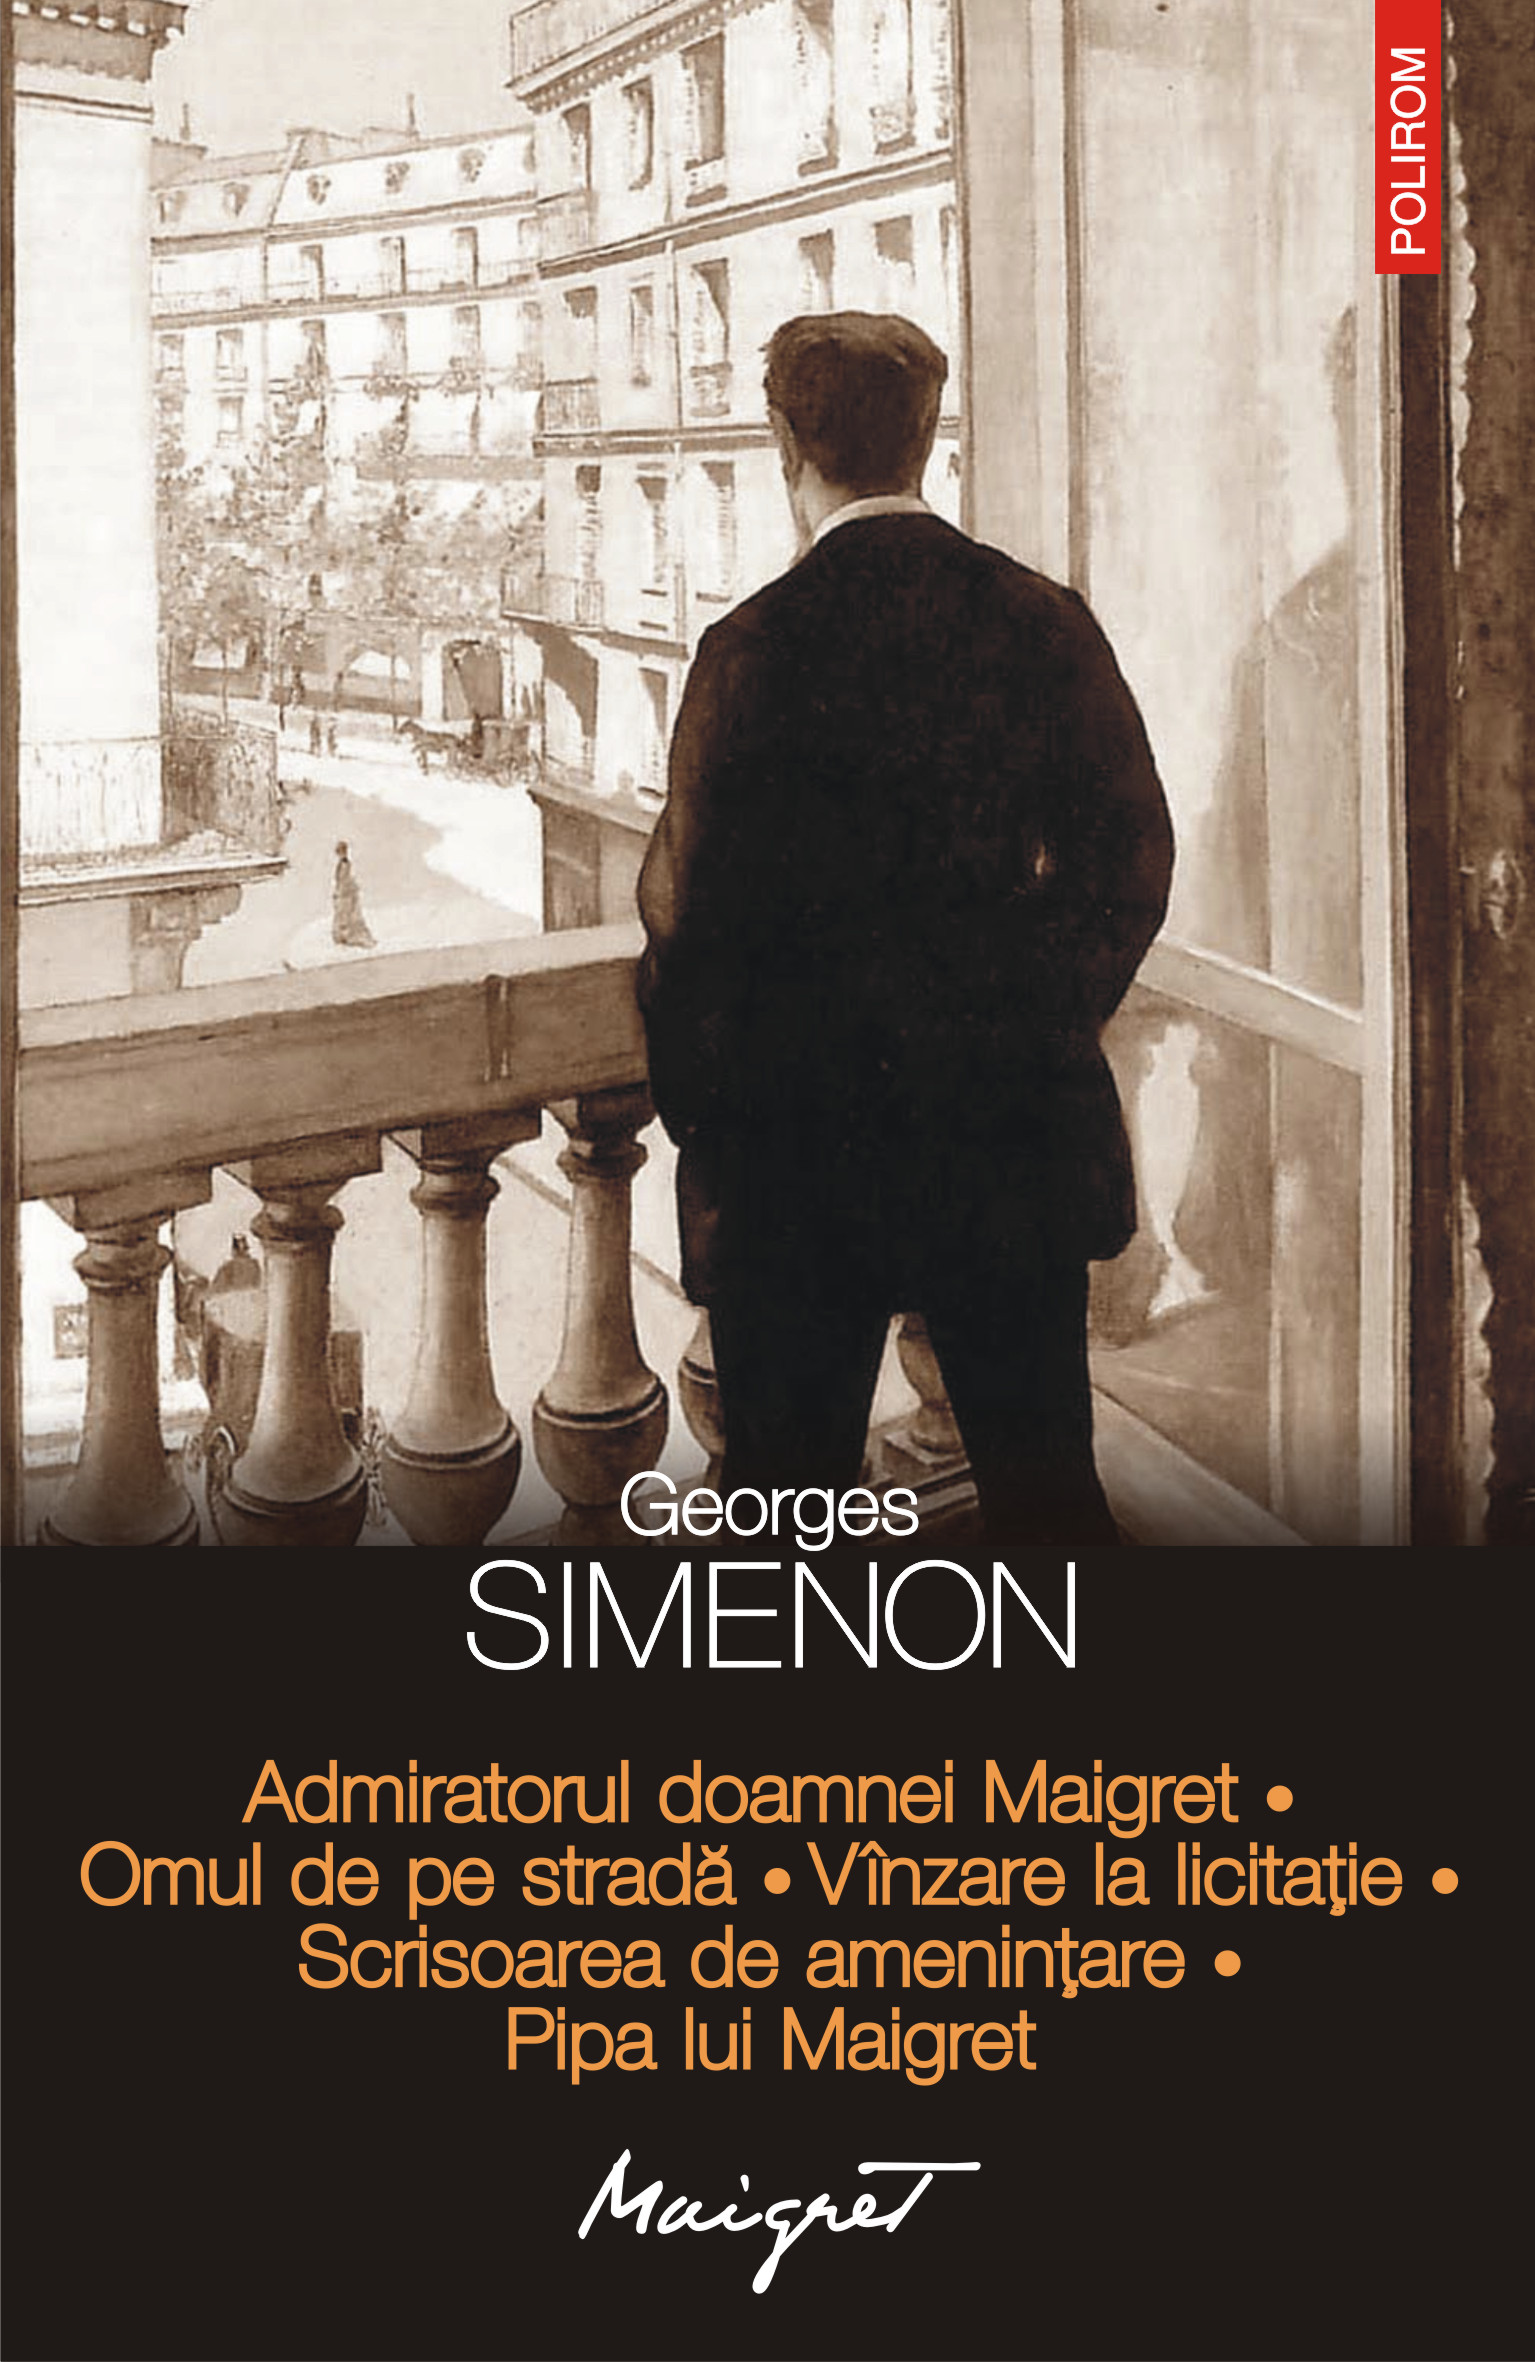 eBook Admiratorul doamnei Maigret. Omul de pe strada. Vinzare la licitatie. Scrisoarea de amenintare. Pipa lui Maigret - Georges Simenon